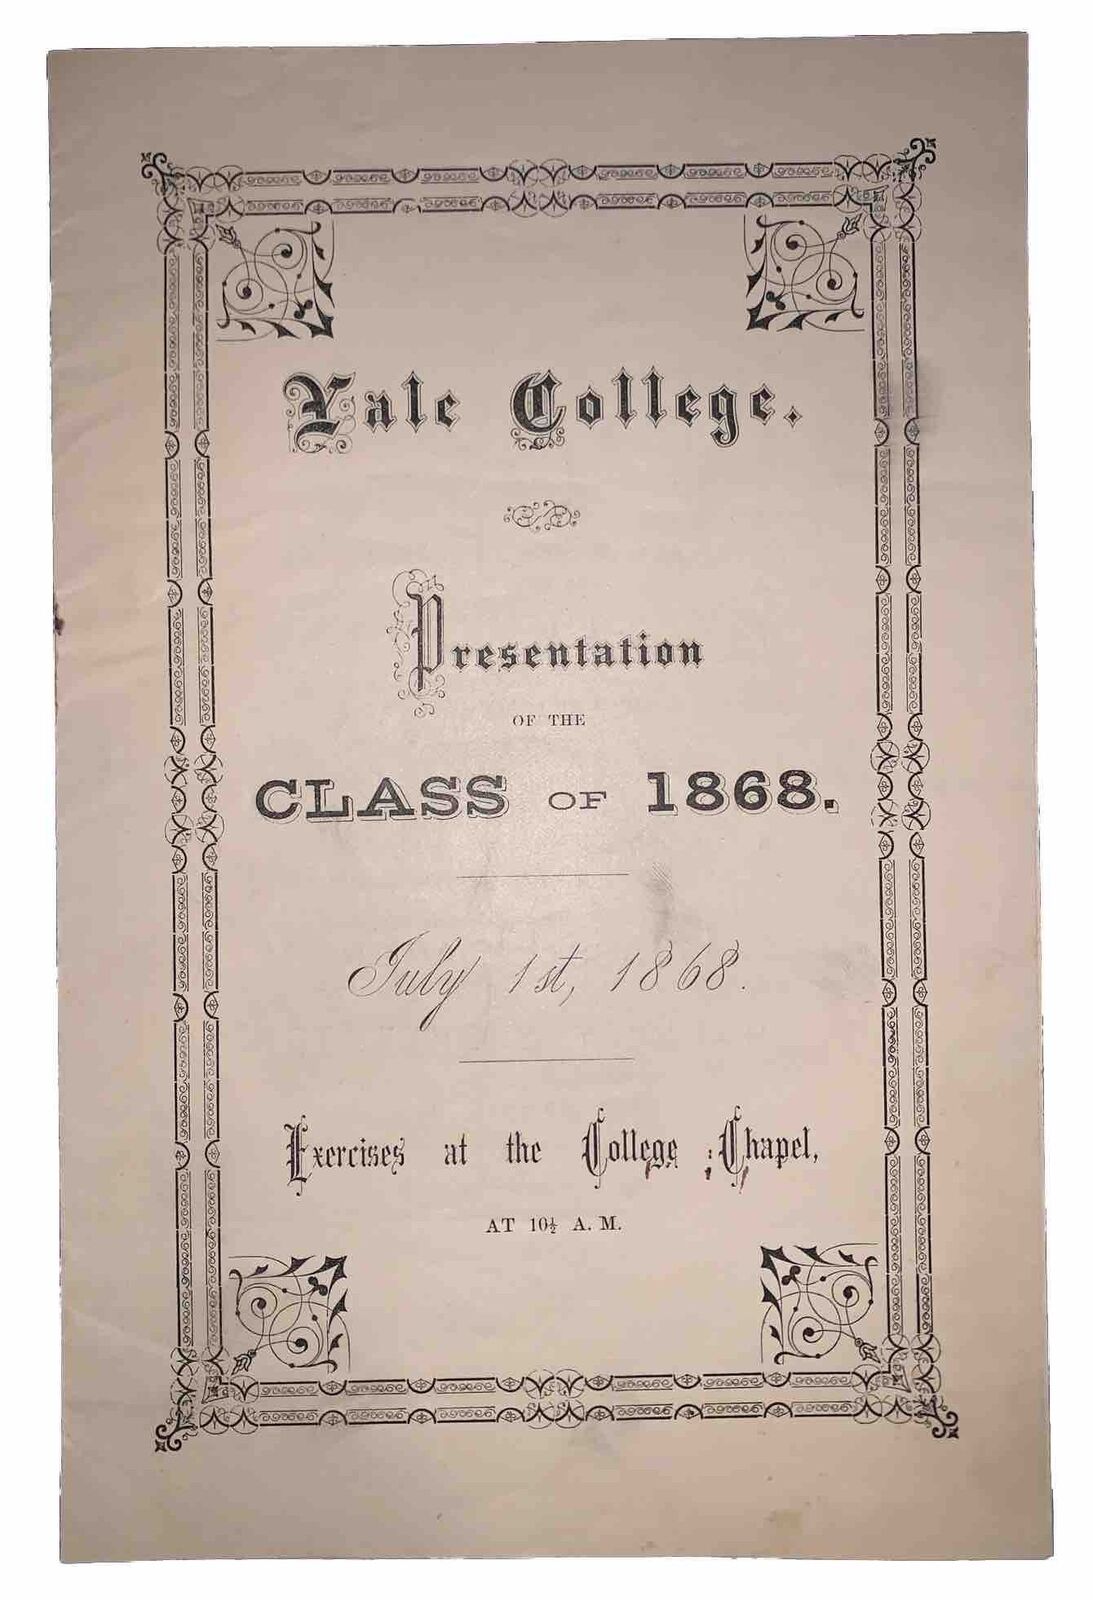 1868, YALE COLLEGE COMMENCEMENT PROGRAM, NEW HAVEN CONNECTICUT, UNIVERSITY